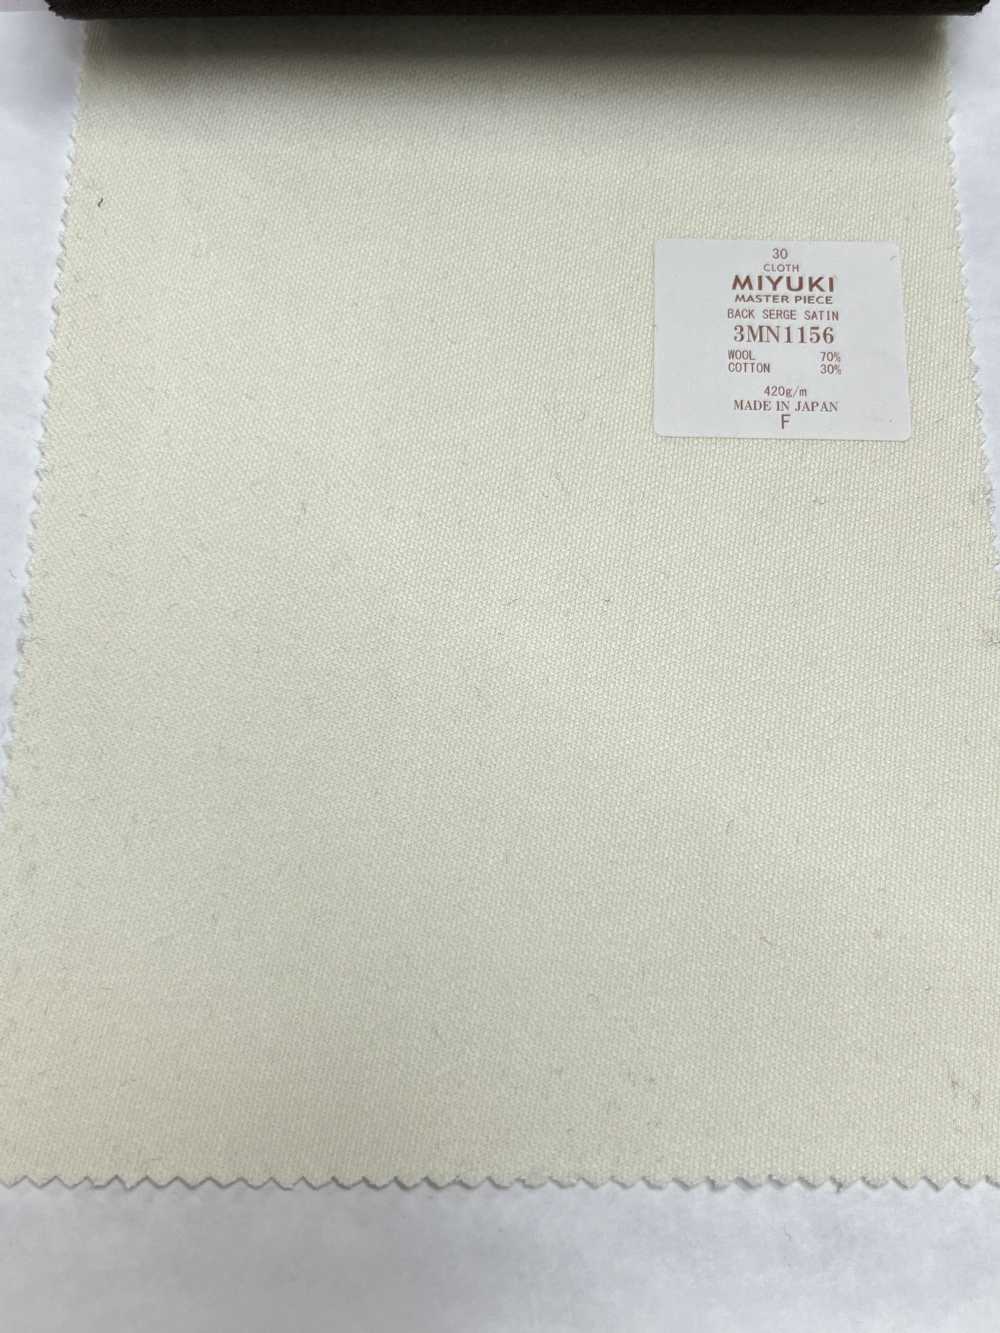 3MN1156 Creative Masterpiece Serge Satin Plain Off-White[Textile] Miyuki Keori (Miyuki)